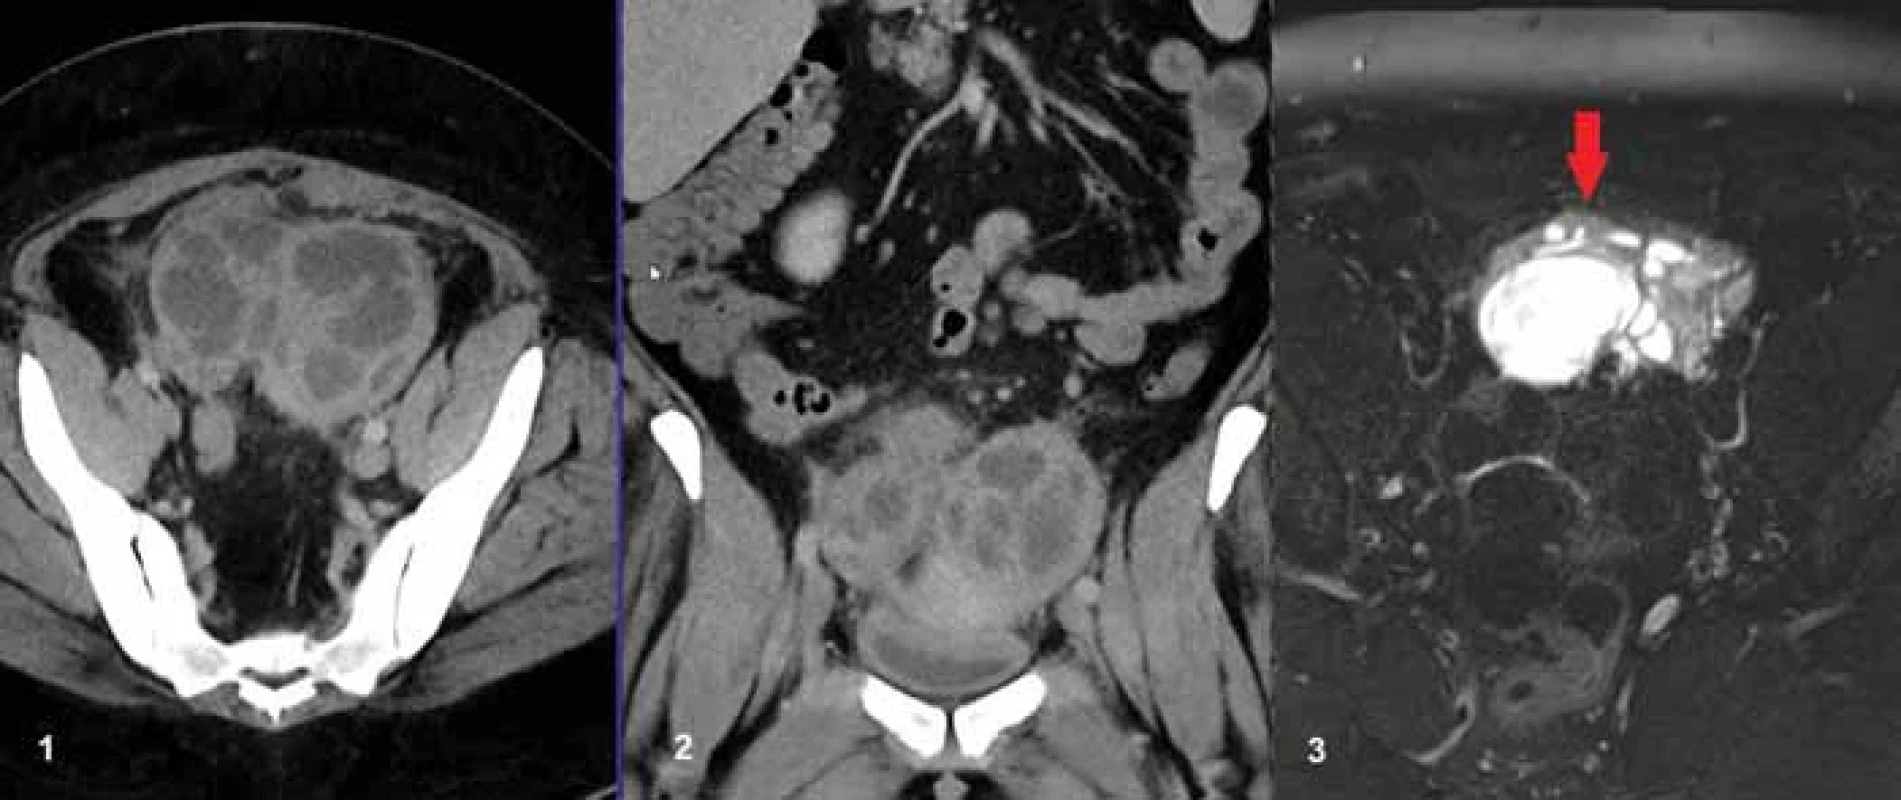 42letá pacientka s bolestmi břicha a zánětlivou laboratoří, se známými polycystickými ovarii fi xovanými pod přední stěnou břišní (červená šipka), jak je patrné na obrázku C, kde je MR nález 15 měsíců před CT vyšetřením v T2 vážení s potlačením signálu tuku. Na obr. A a B jsou v CT obraze patrna polycystická ovaria s nízkou denzitou obsahu, tedy byla zvažována přítomnost prostých cyst. Na peroperačním preparátu byly prokázány kolekce hnisu a byla provedena oboustranná adnexektomie. 